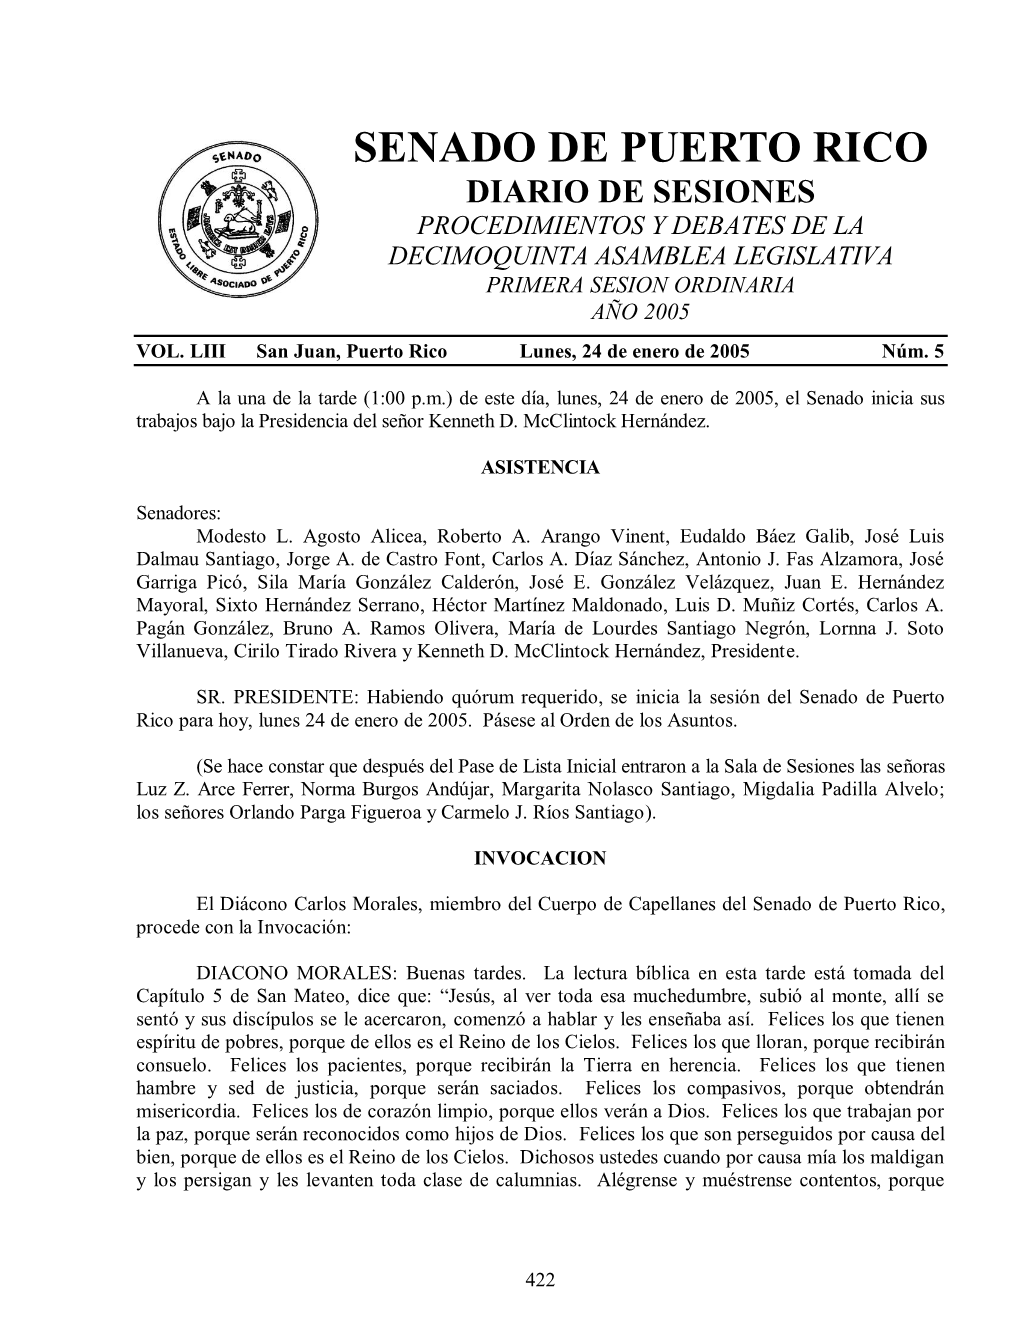 Senado De Puerto Rico Diario De Sesiones Procedimientos Y Debates De La Decimoquinta Asamblea Legislativa Primera Sesion Ordinaria Año 2005 Vol